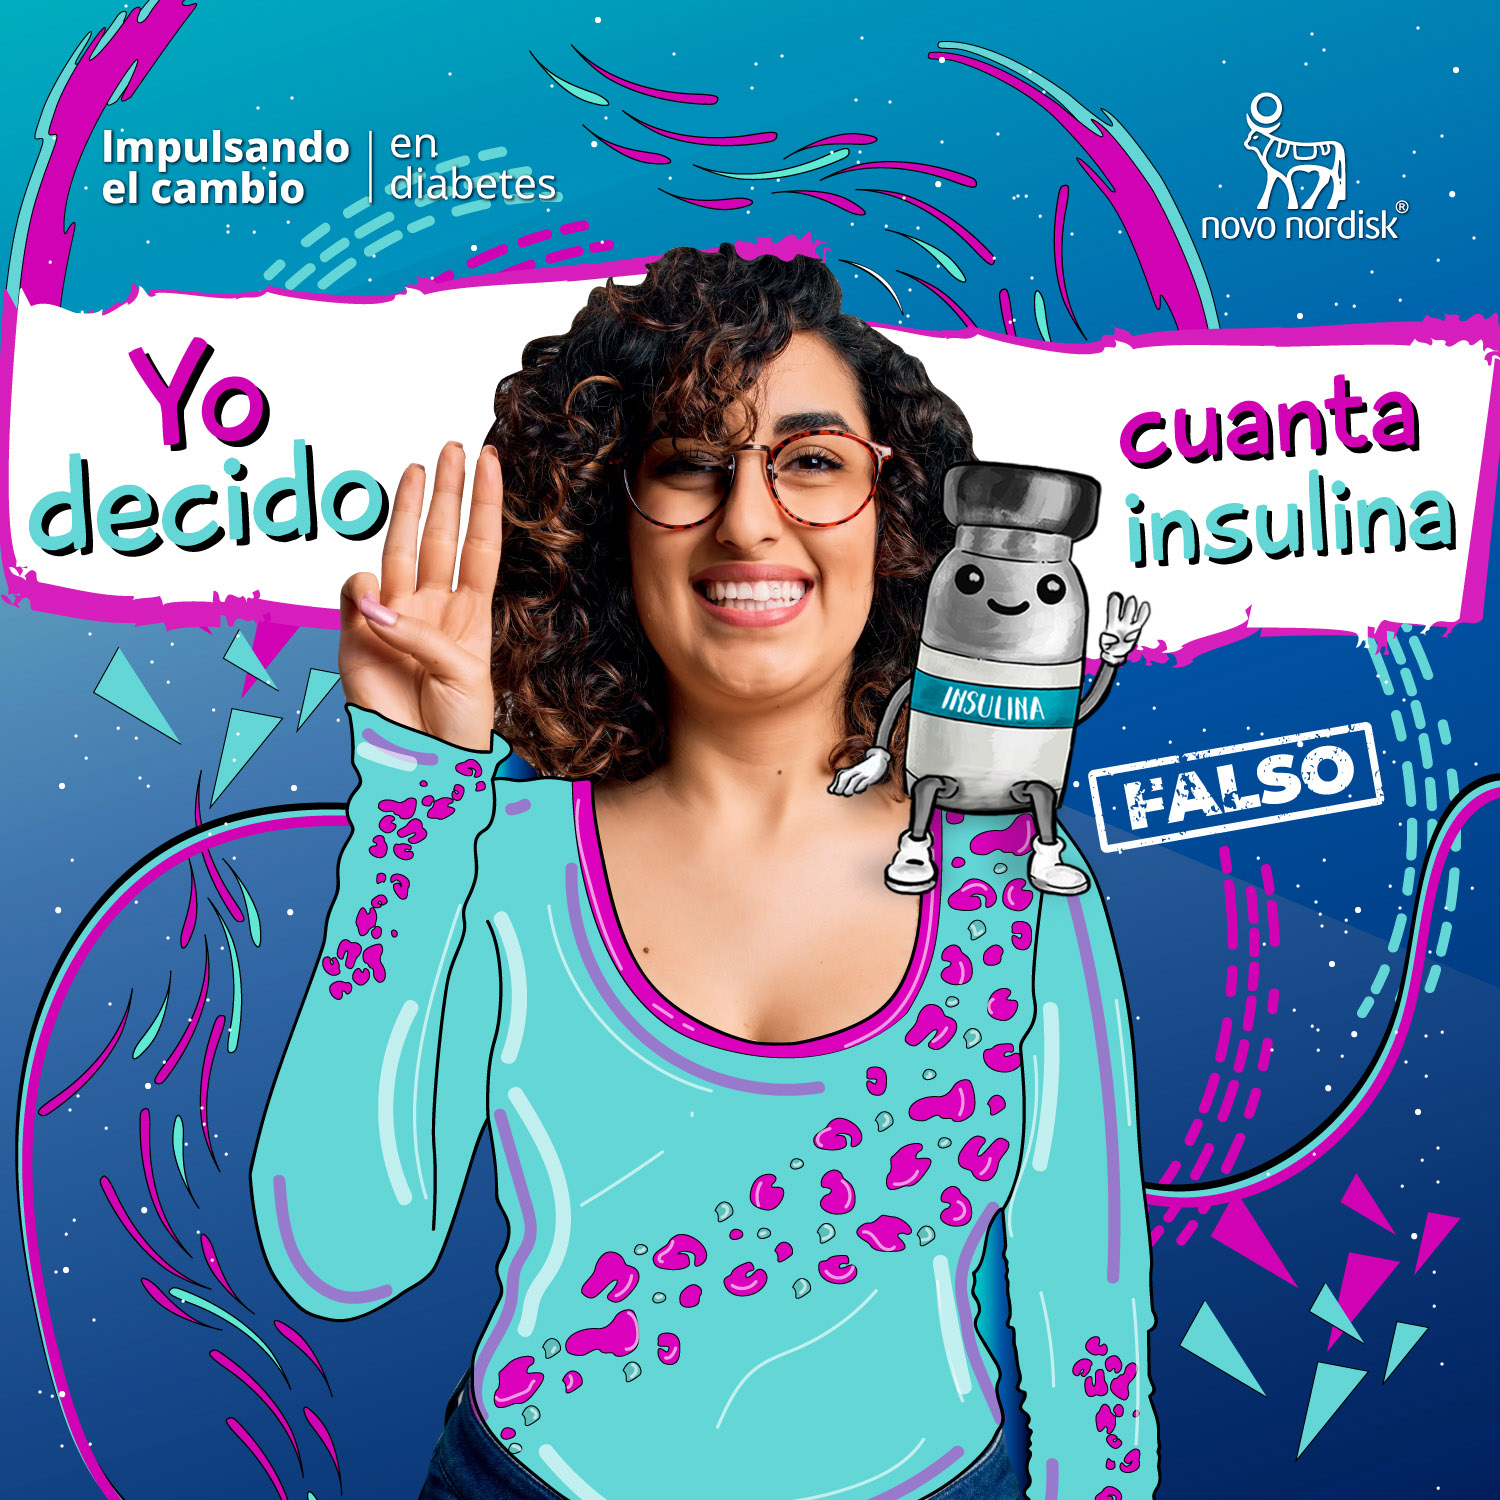 Insulina, una maravillosa aliada en el manejo de nuestra diabetes